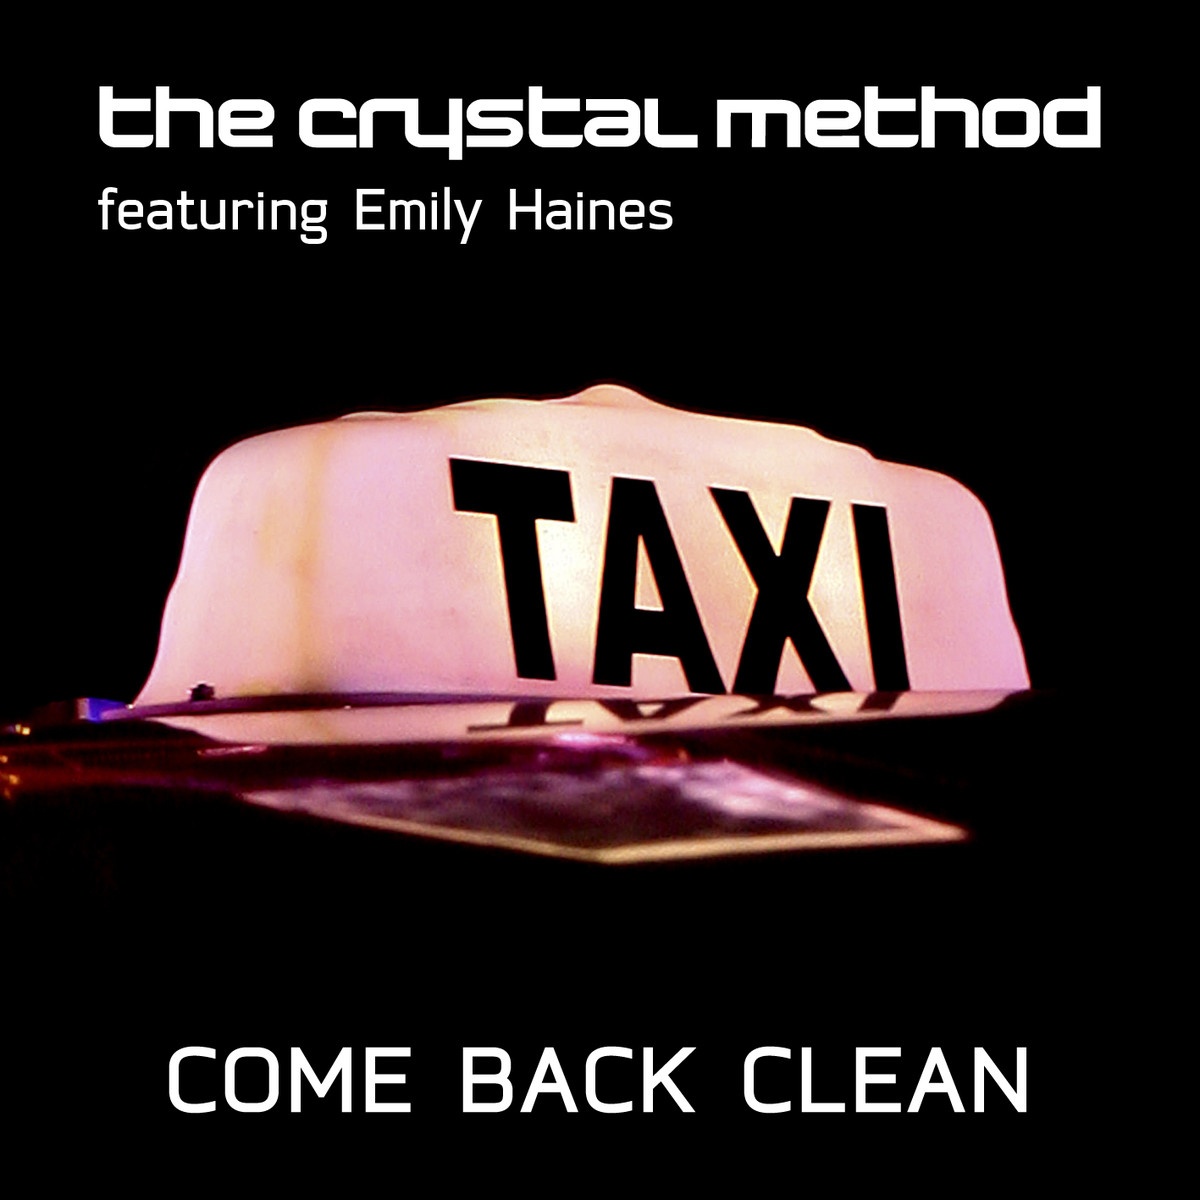 Come Back Clean (The Remixes Pt.2)